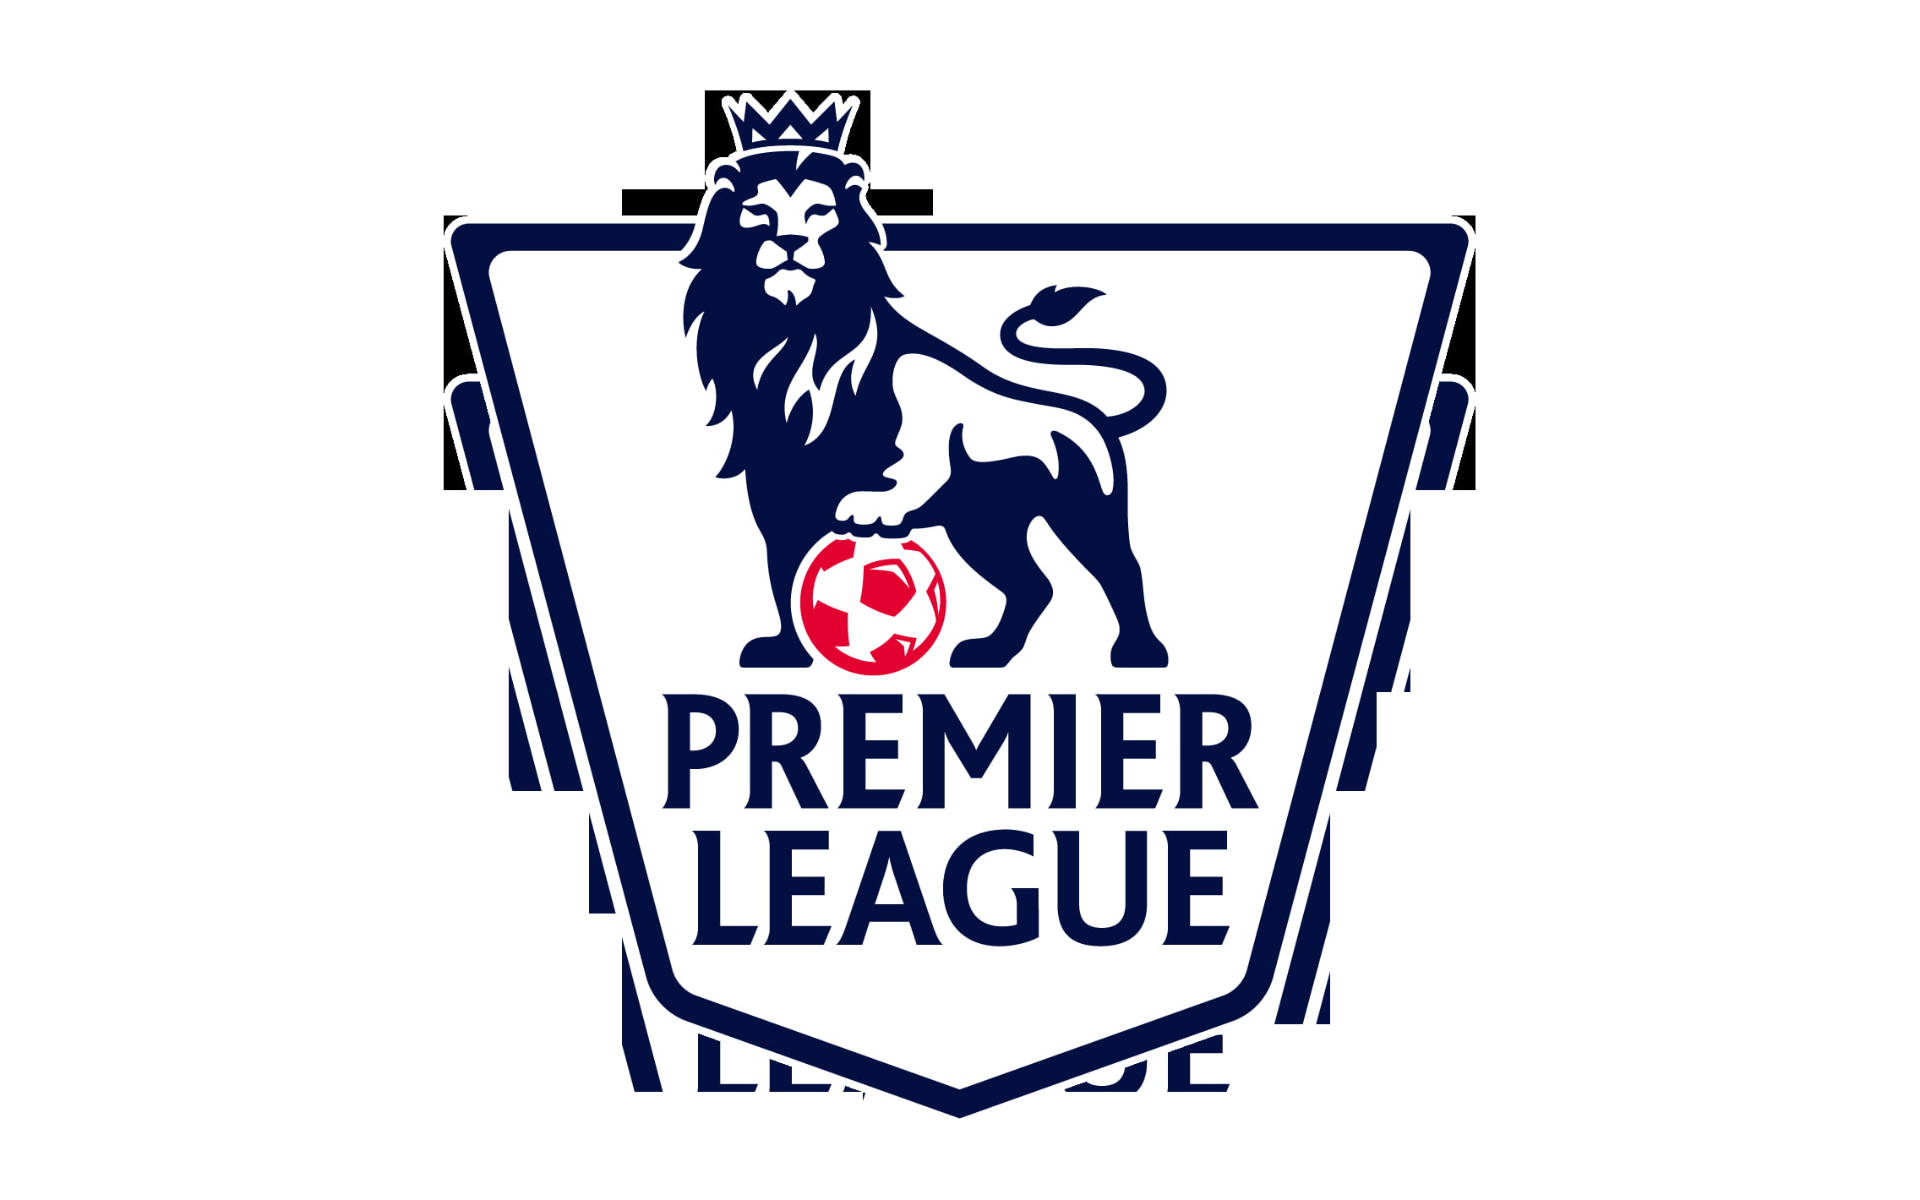 Premier League Emblem In White Background